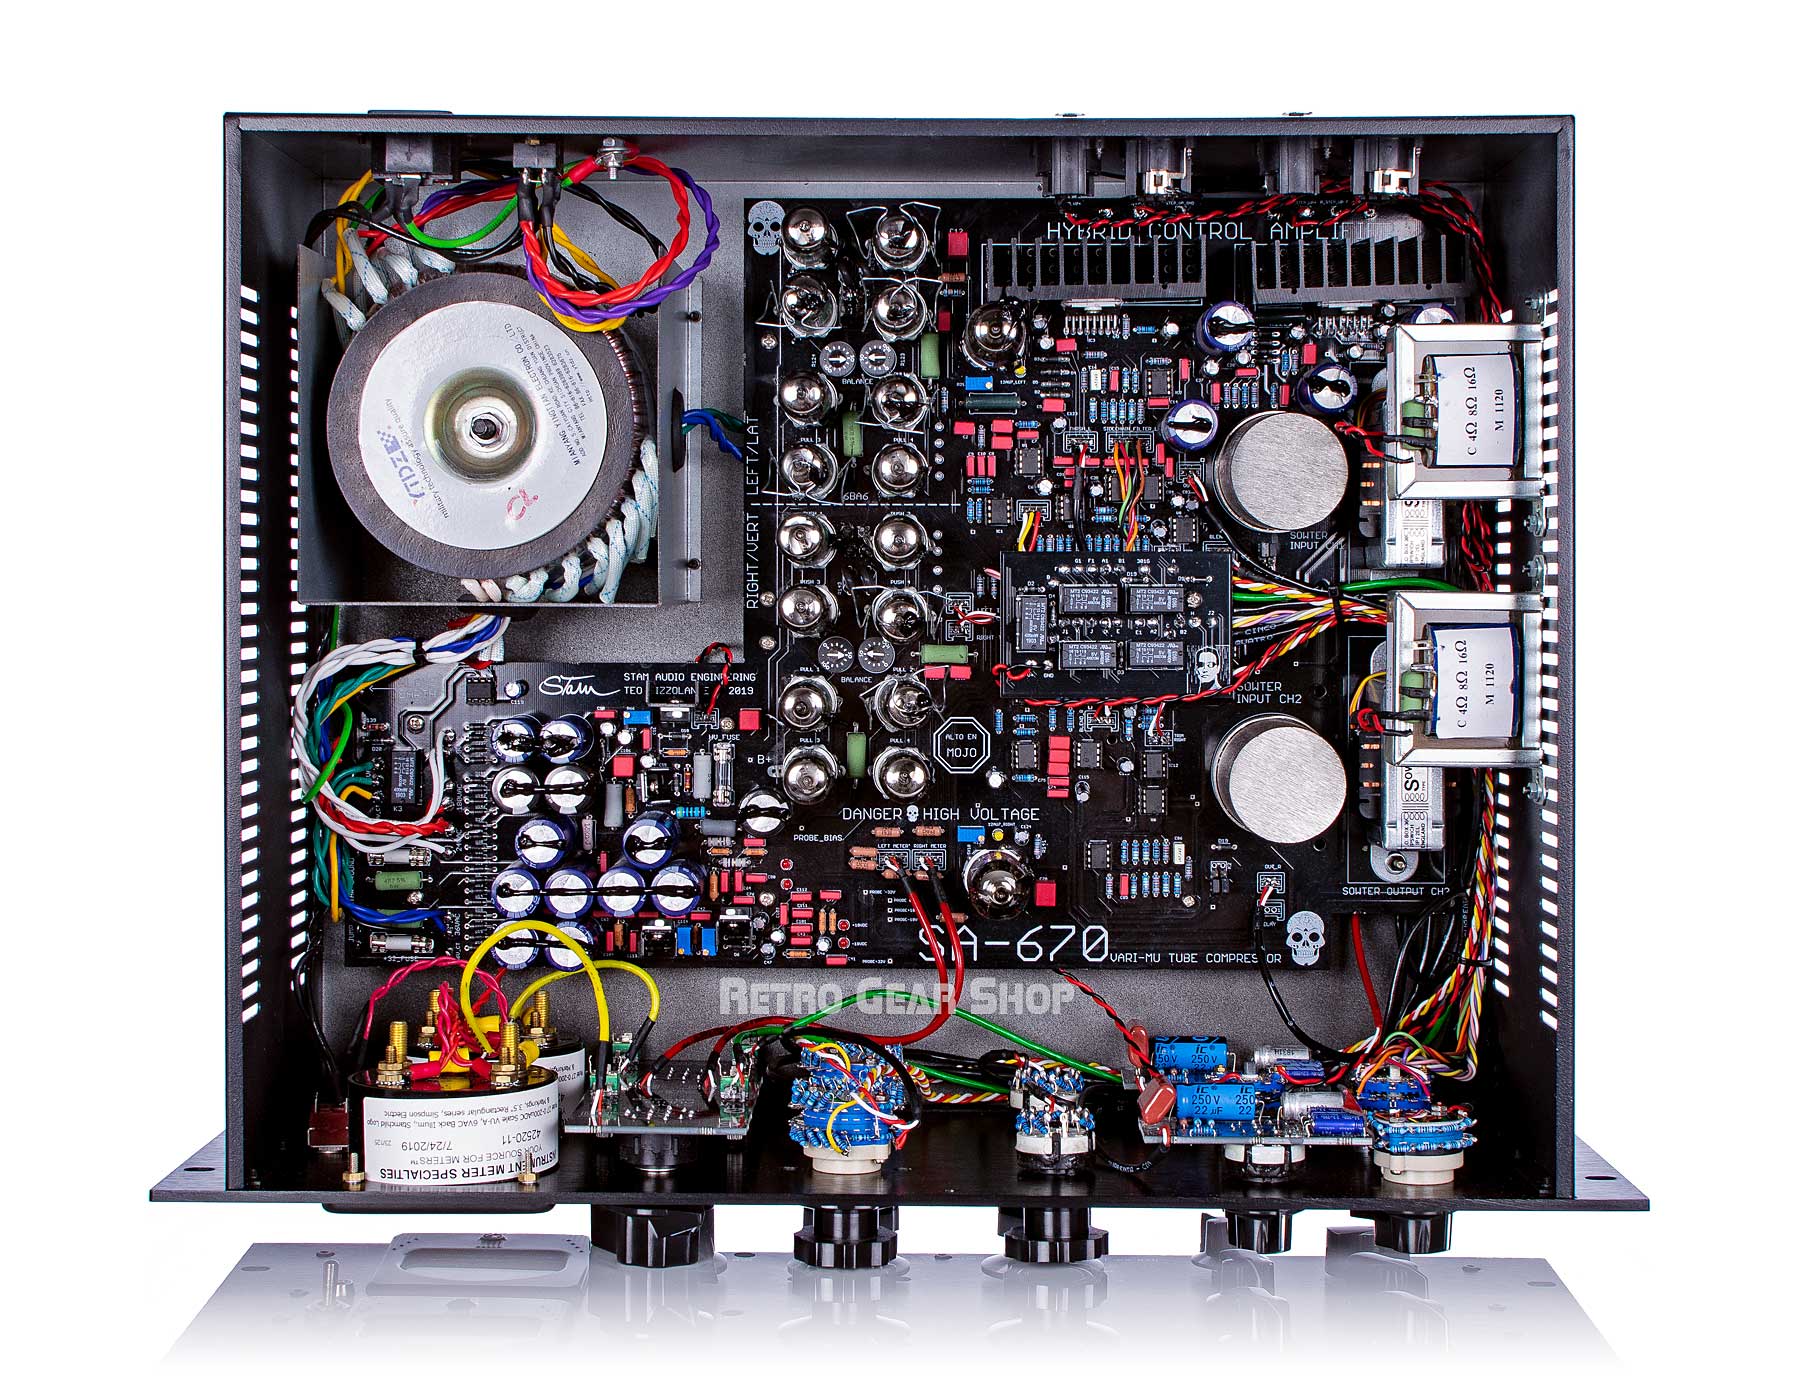 Stam Audio Stamchild SA-670 Internals